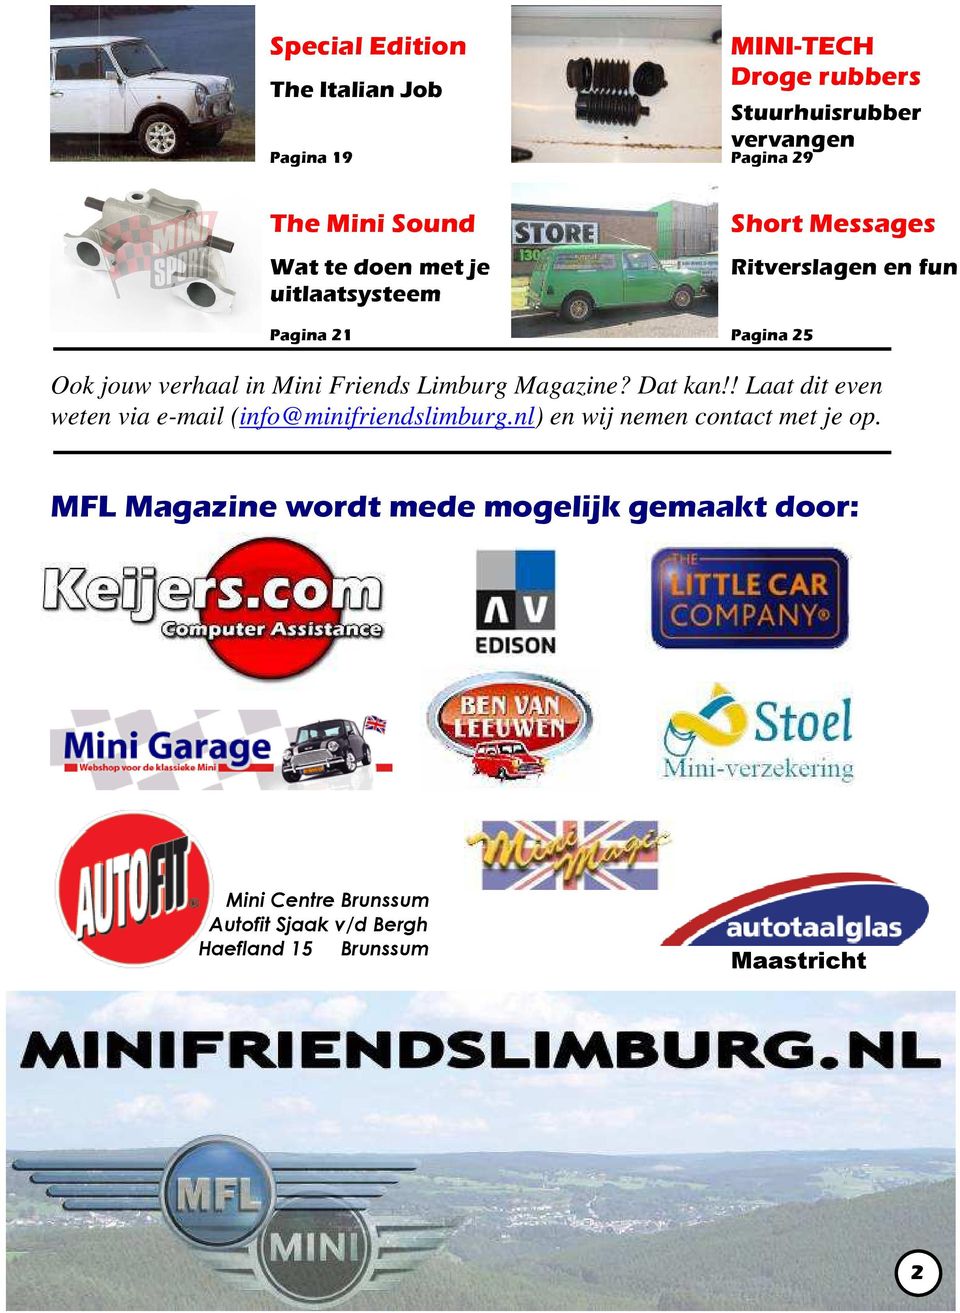 Friends Limburg Magazine? Dat kan!! Laat dit even weten via e-mail (info@minifriendslimburg.